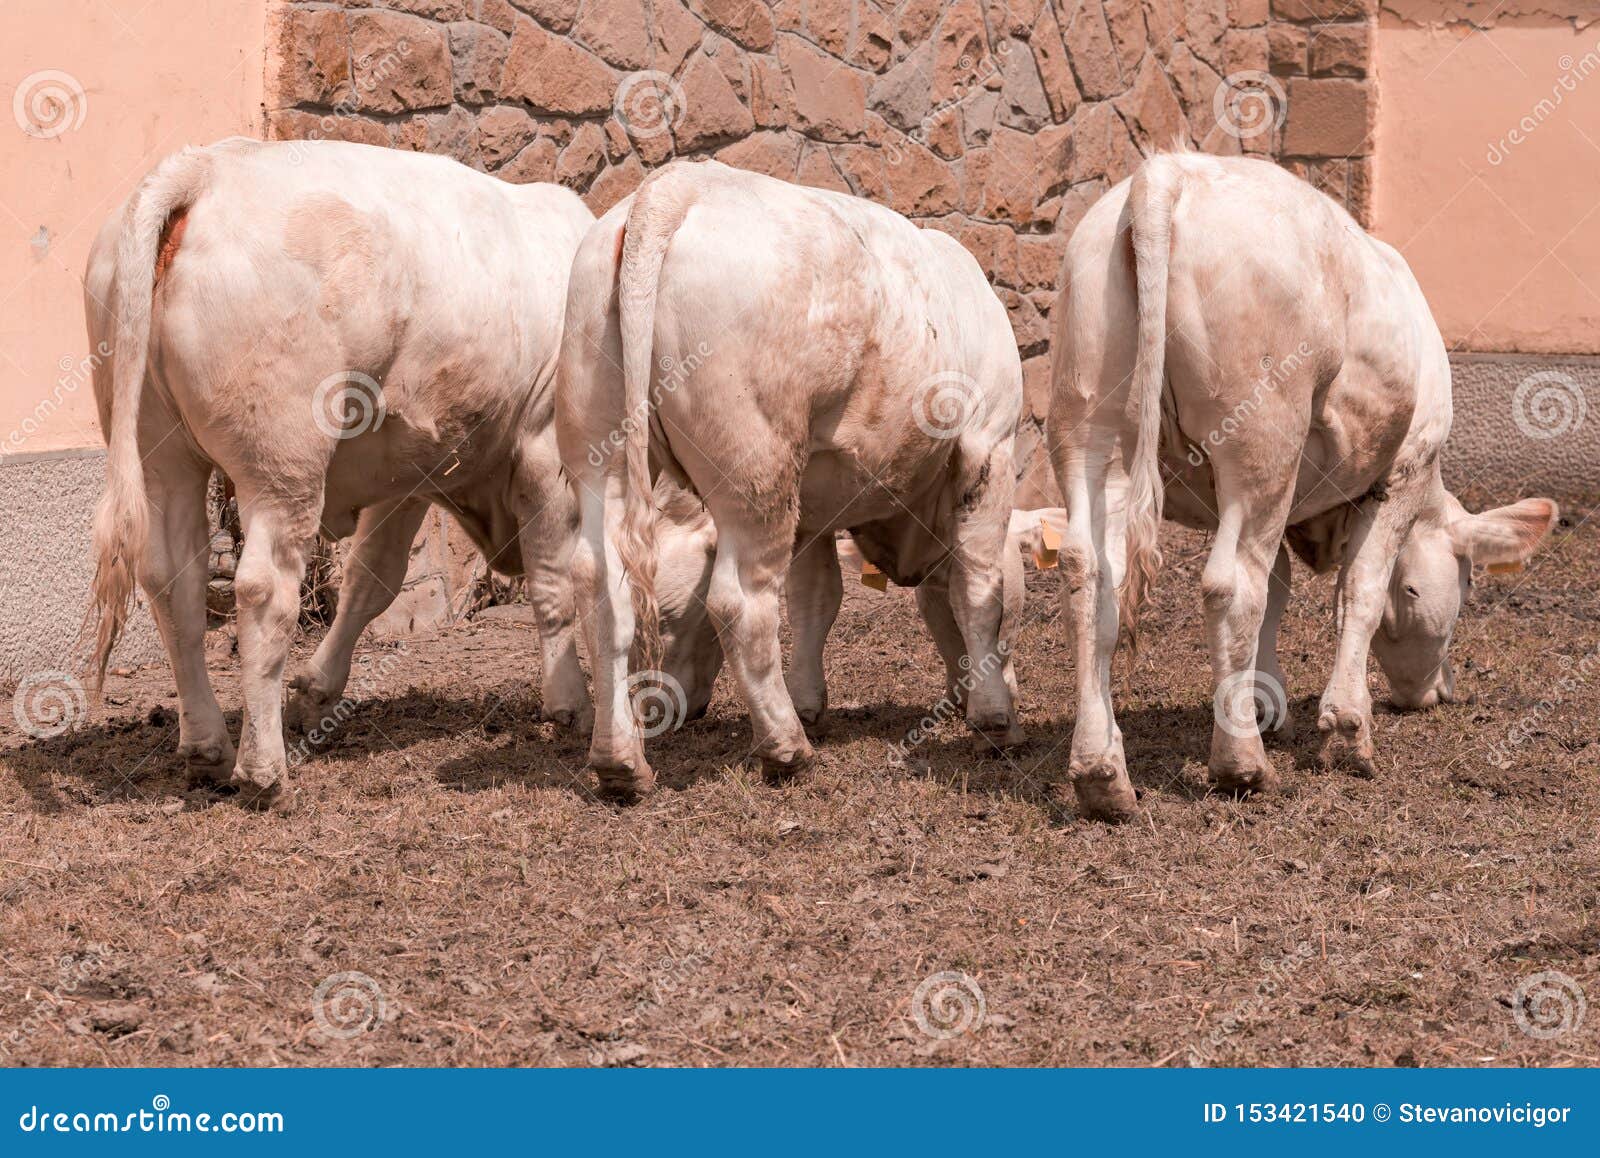 Blonde Holstein Cattle - wide 8